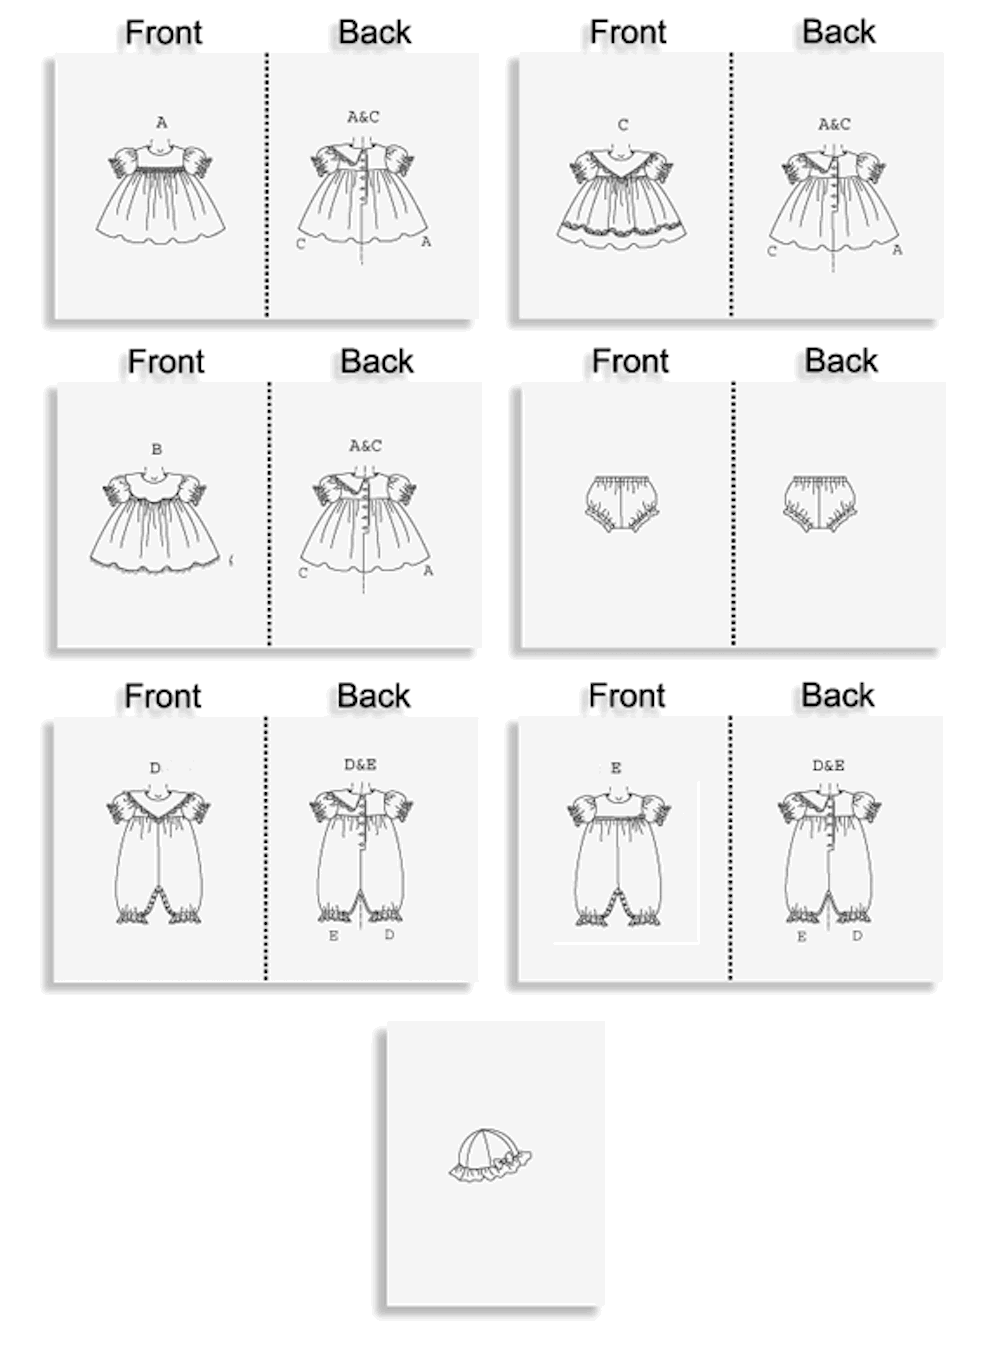 Butterick® Papierschnittmuster Easy Baby Kleid Hut Overall B4110, Größe OSZ S-XL (ca. 64-81cm Körperhöhe)